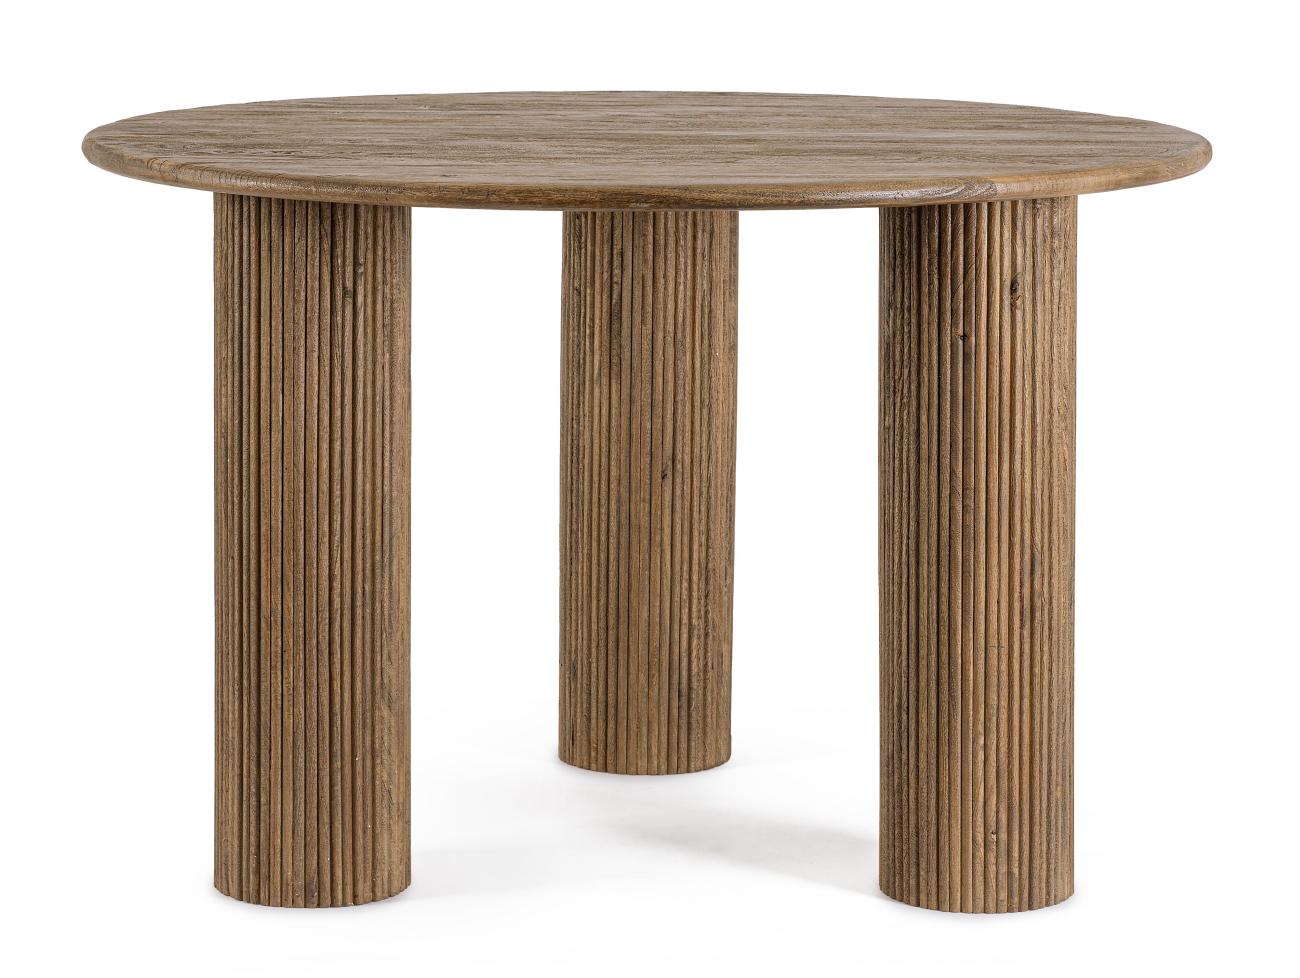 Der Esstisch Dacca überzeugt mit seinem modernen Stil. Gefertigt wurde er aus Mangoholz, welches einen braunen Farbton besitzt. Das Gestell ist auch aus Mangoholz und hat eine braunen Farbe. Der Tisch besitzt einen Durchmesser von 120 cm